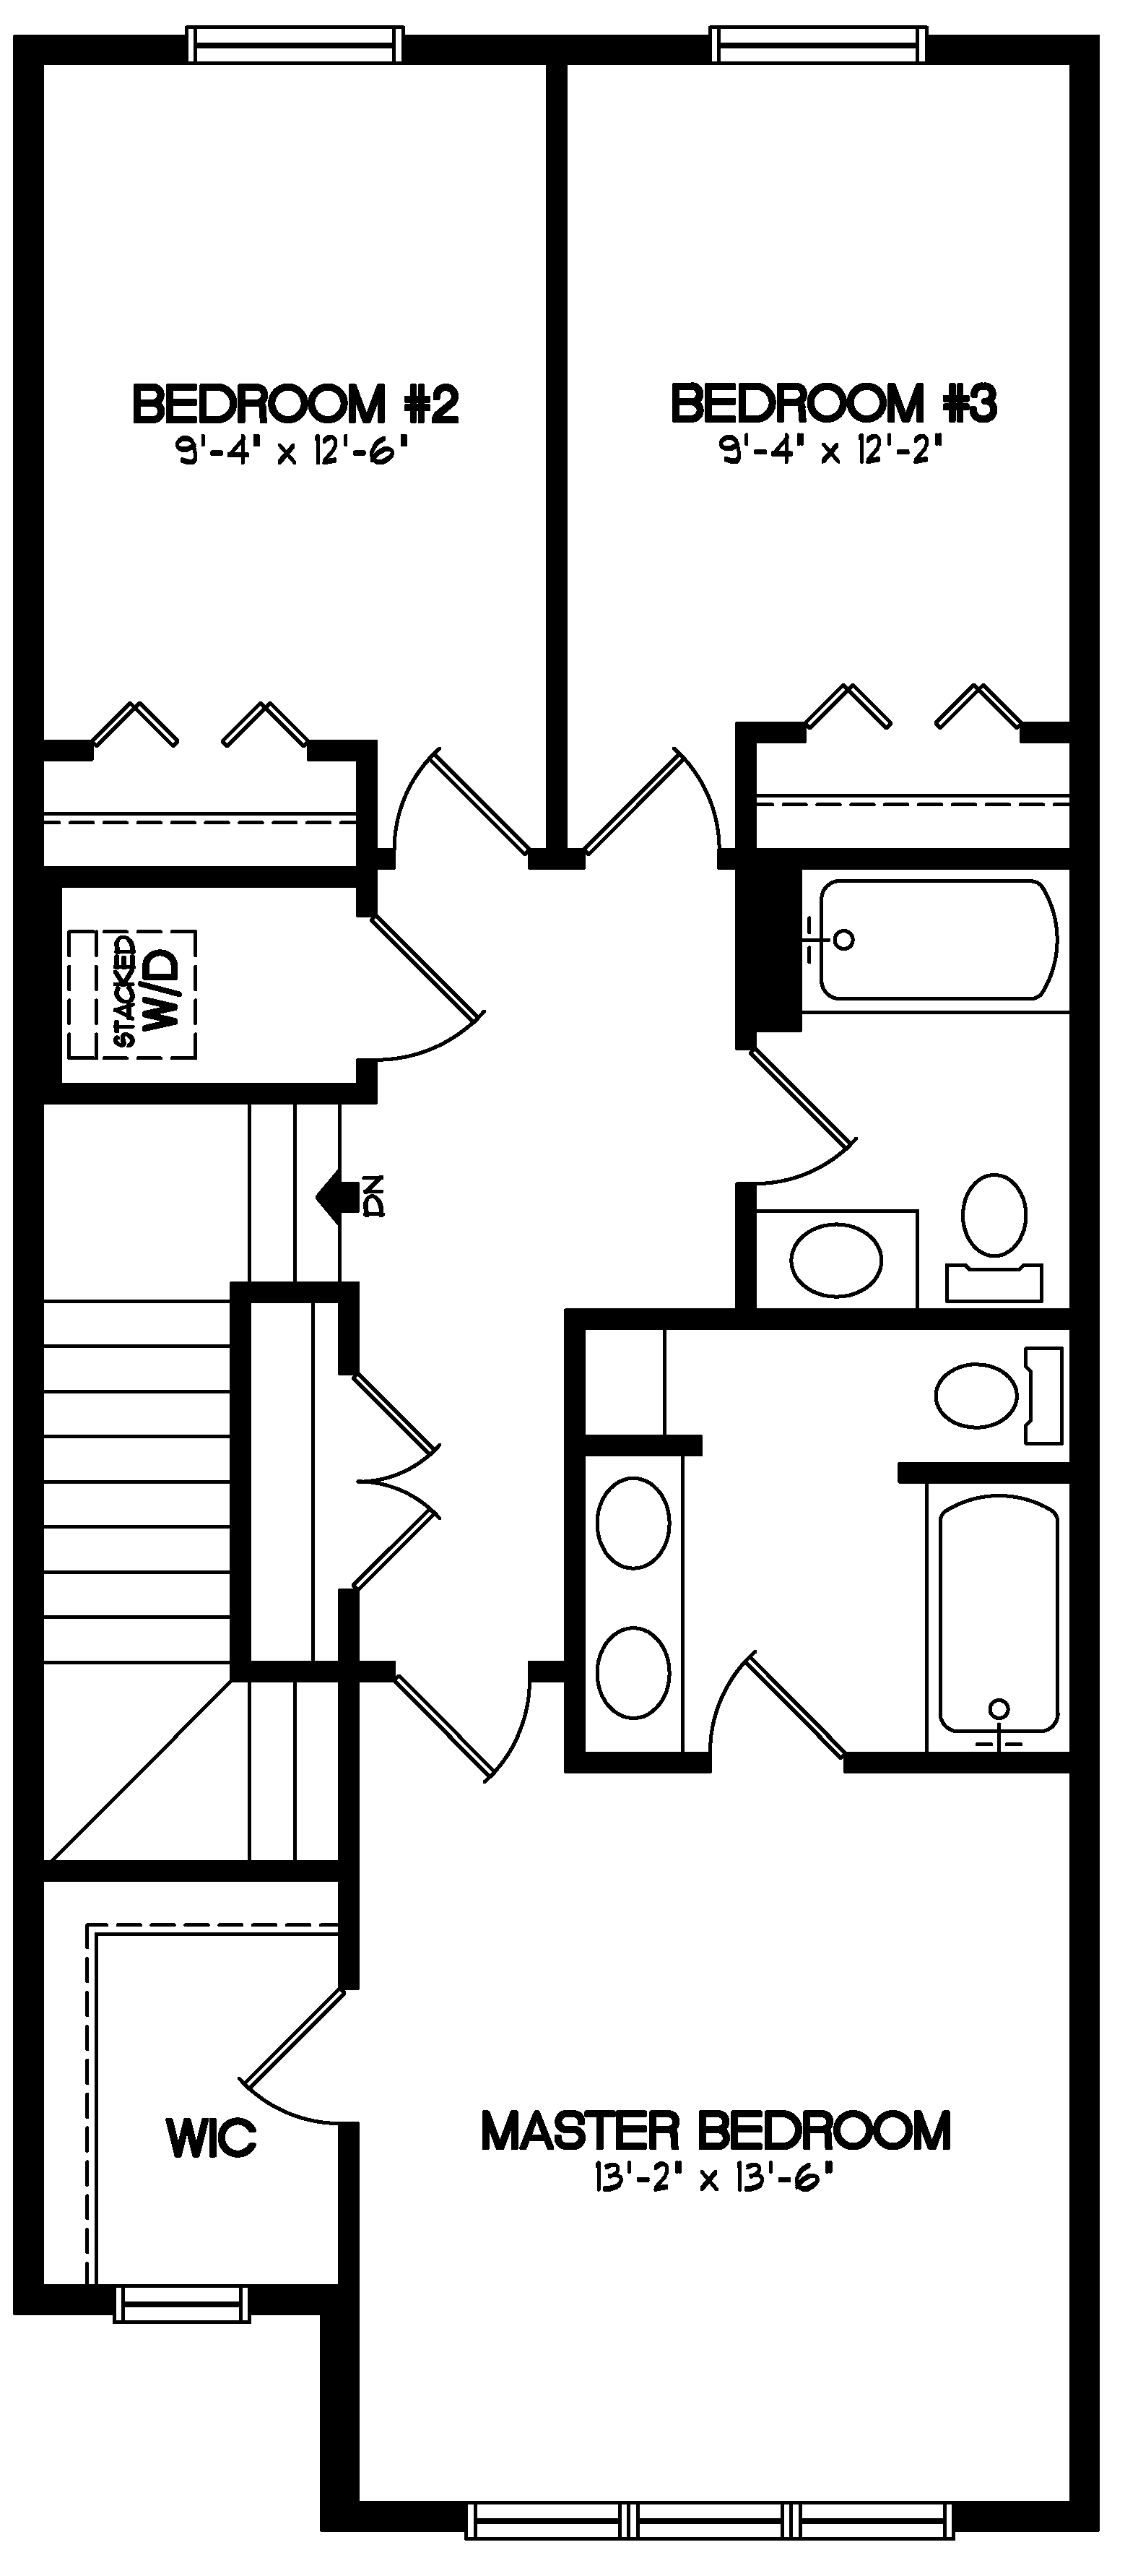 Concord II Home Model Floor Plans